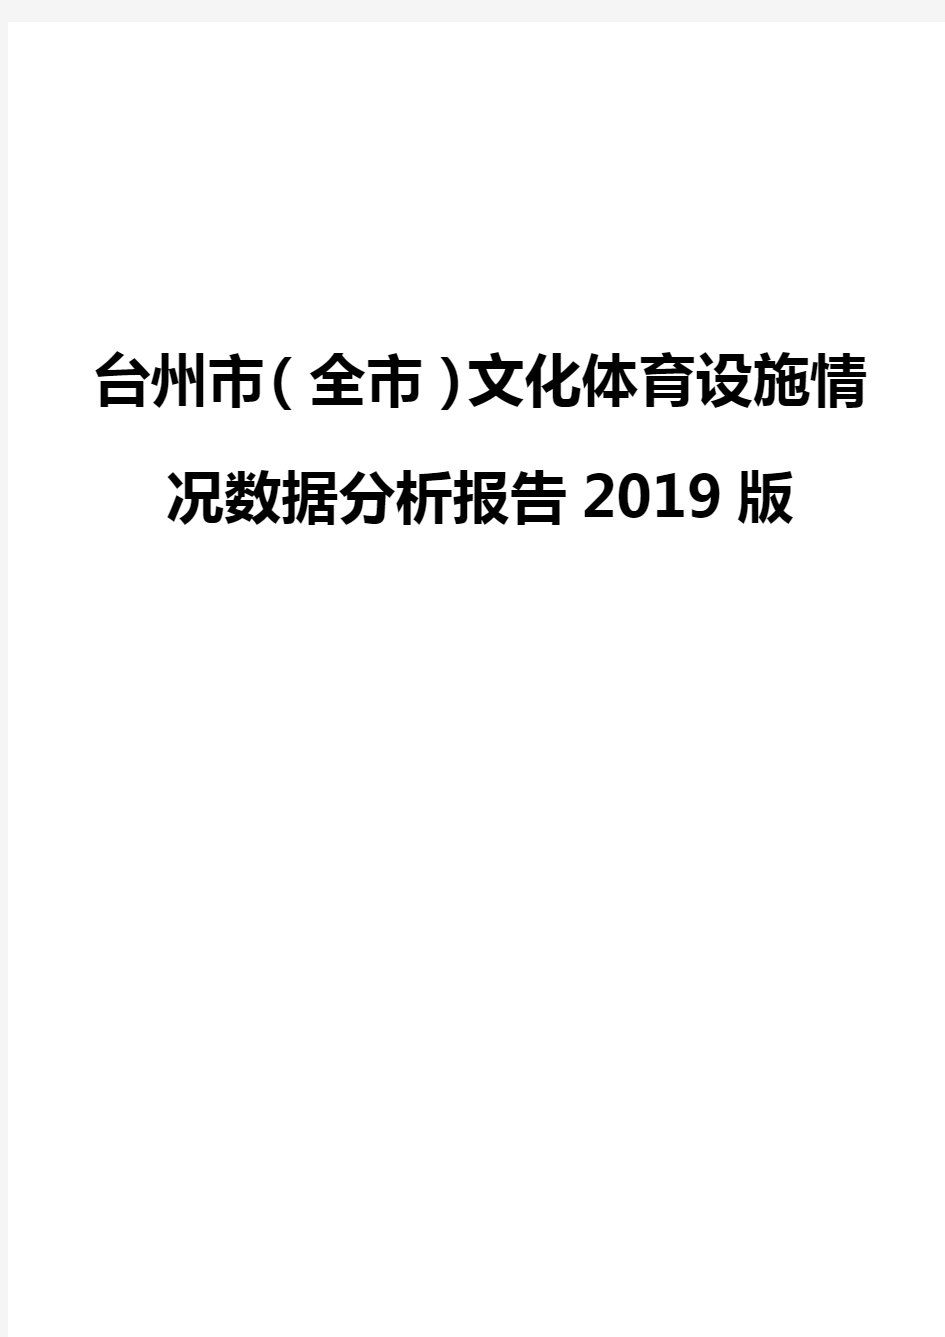 台州市(全市)文化体育设施情况数据分析报告2019版